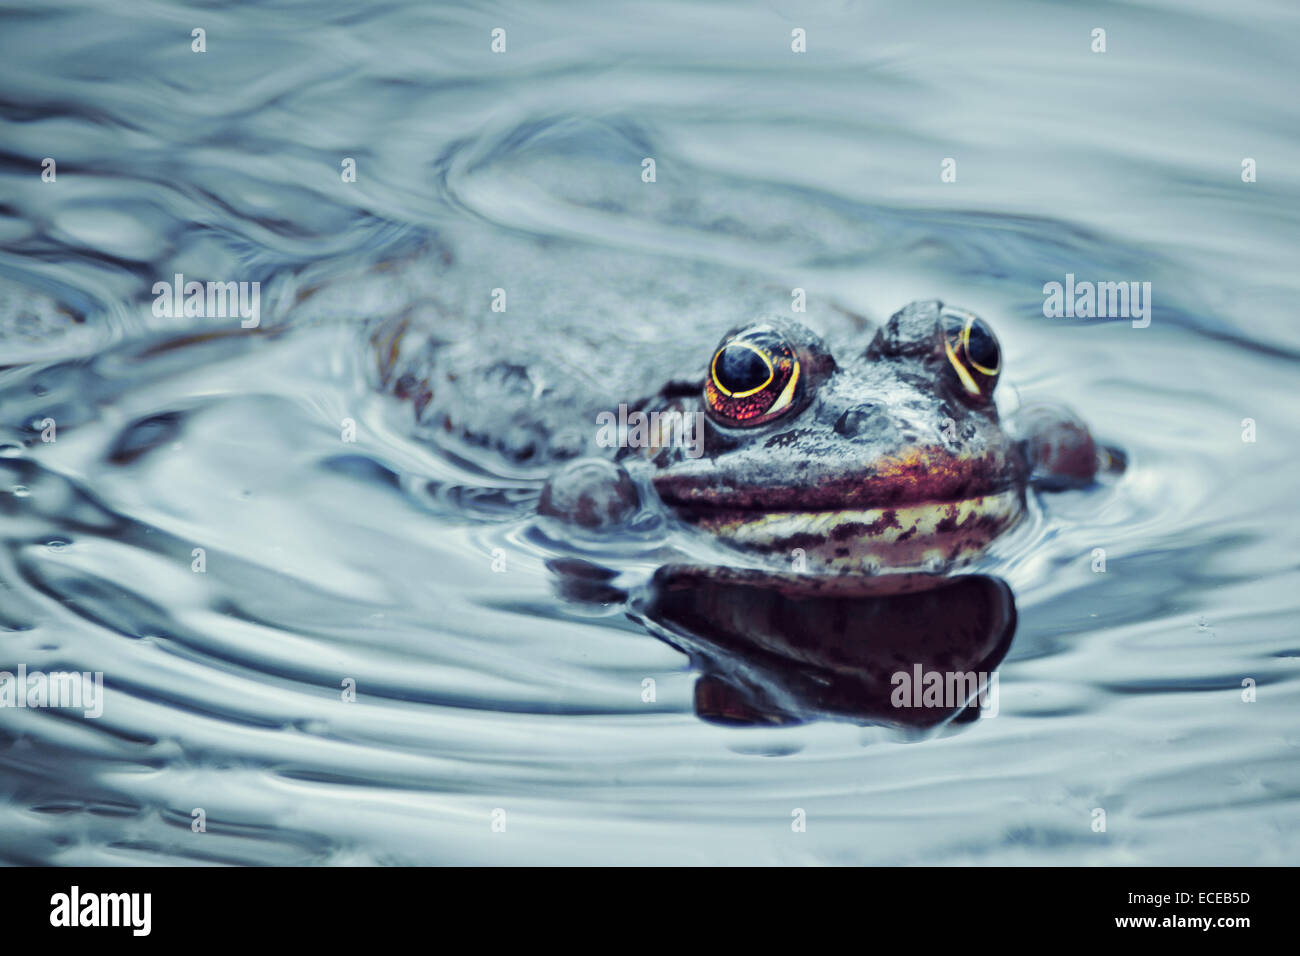 Frog swimming in pond, Zagreb, Croatia Stock Photo